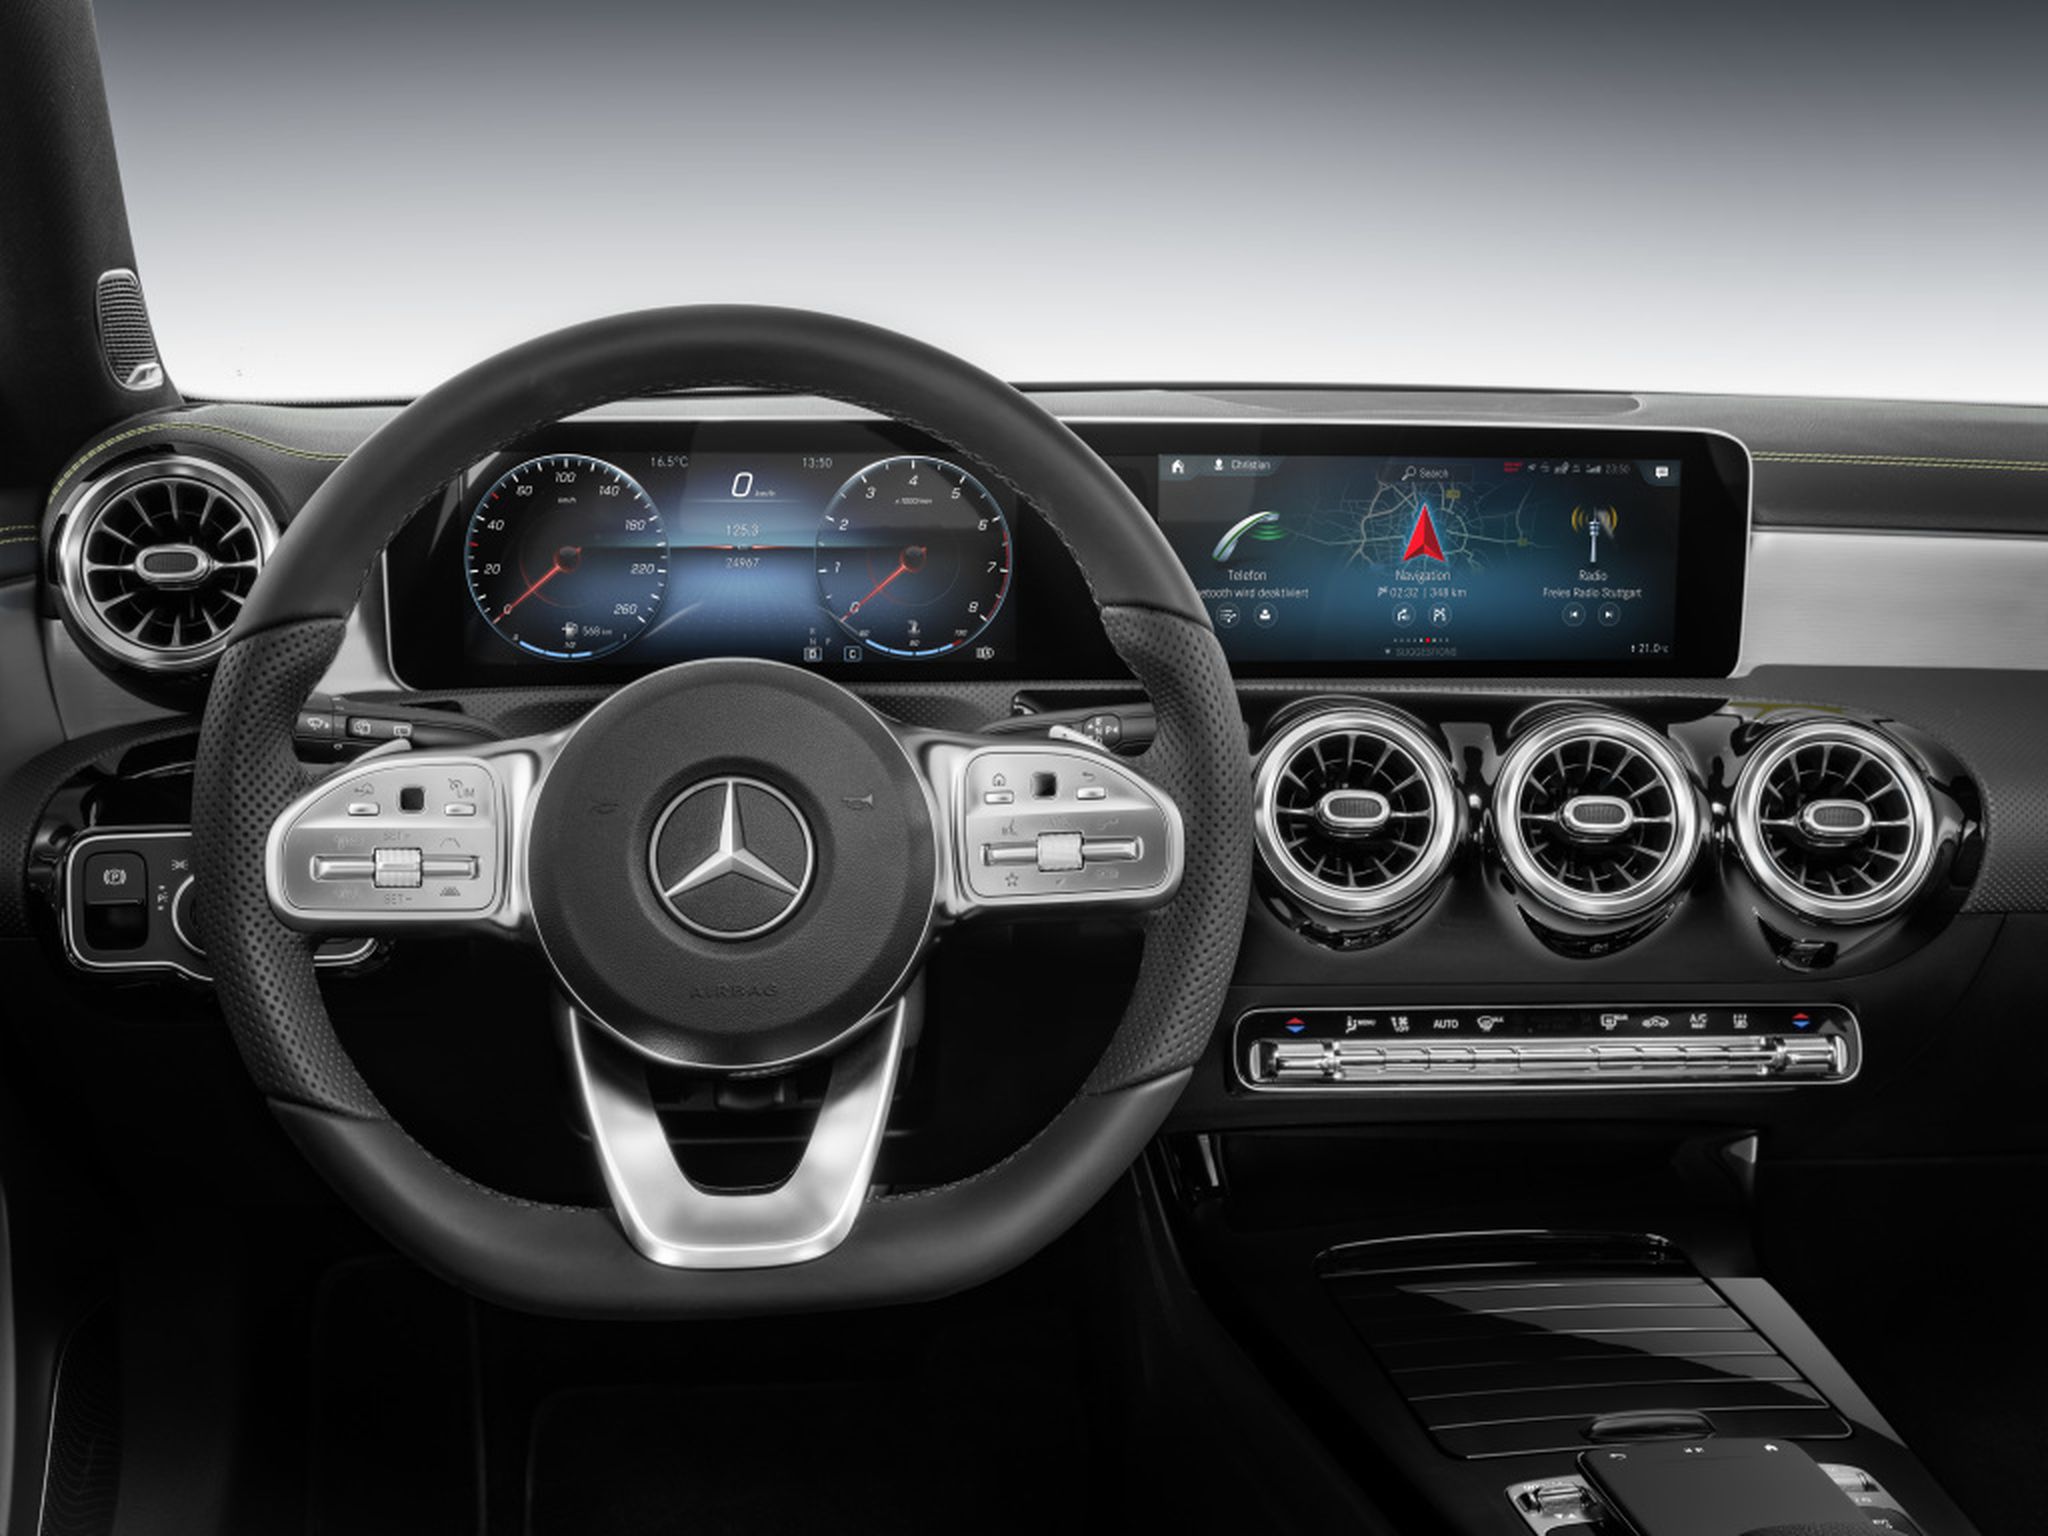 Nuevo sistema de infoentretenimiento del Mercedes Clase A 2018